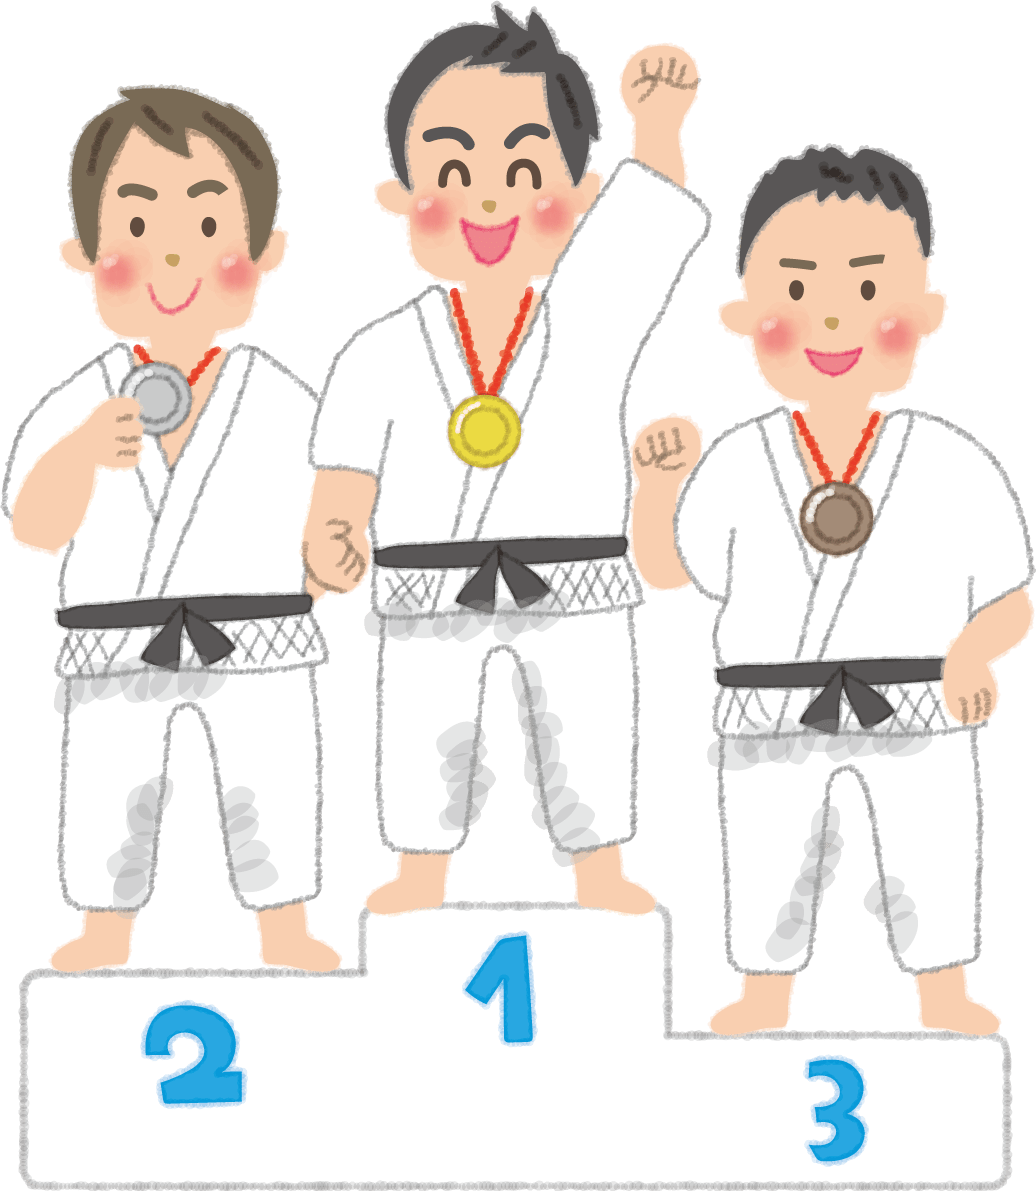 オリンピック表彰台-柔道(男子)選手